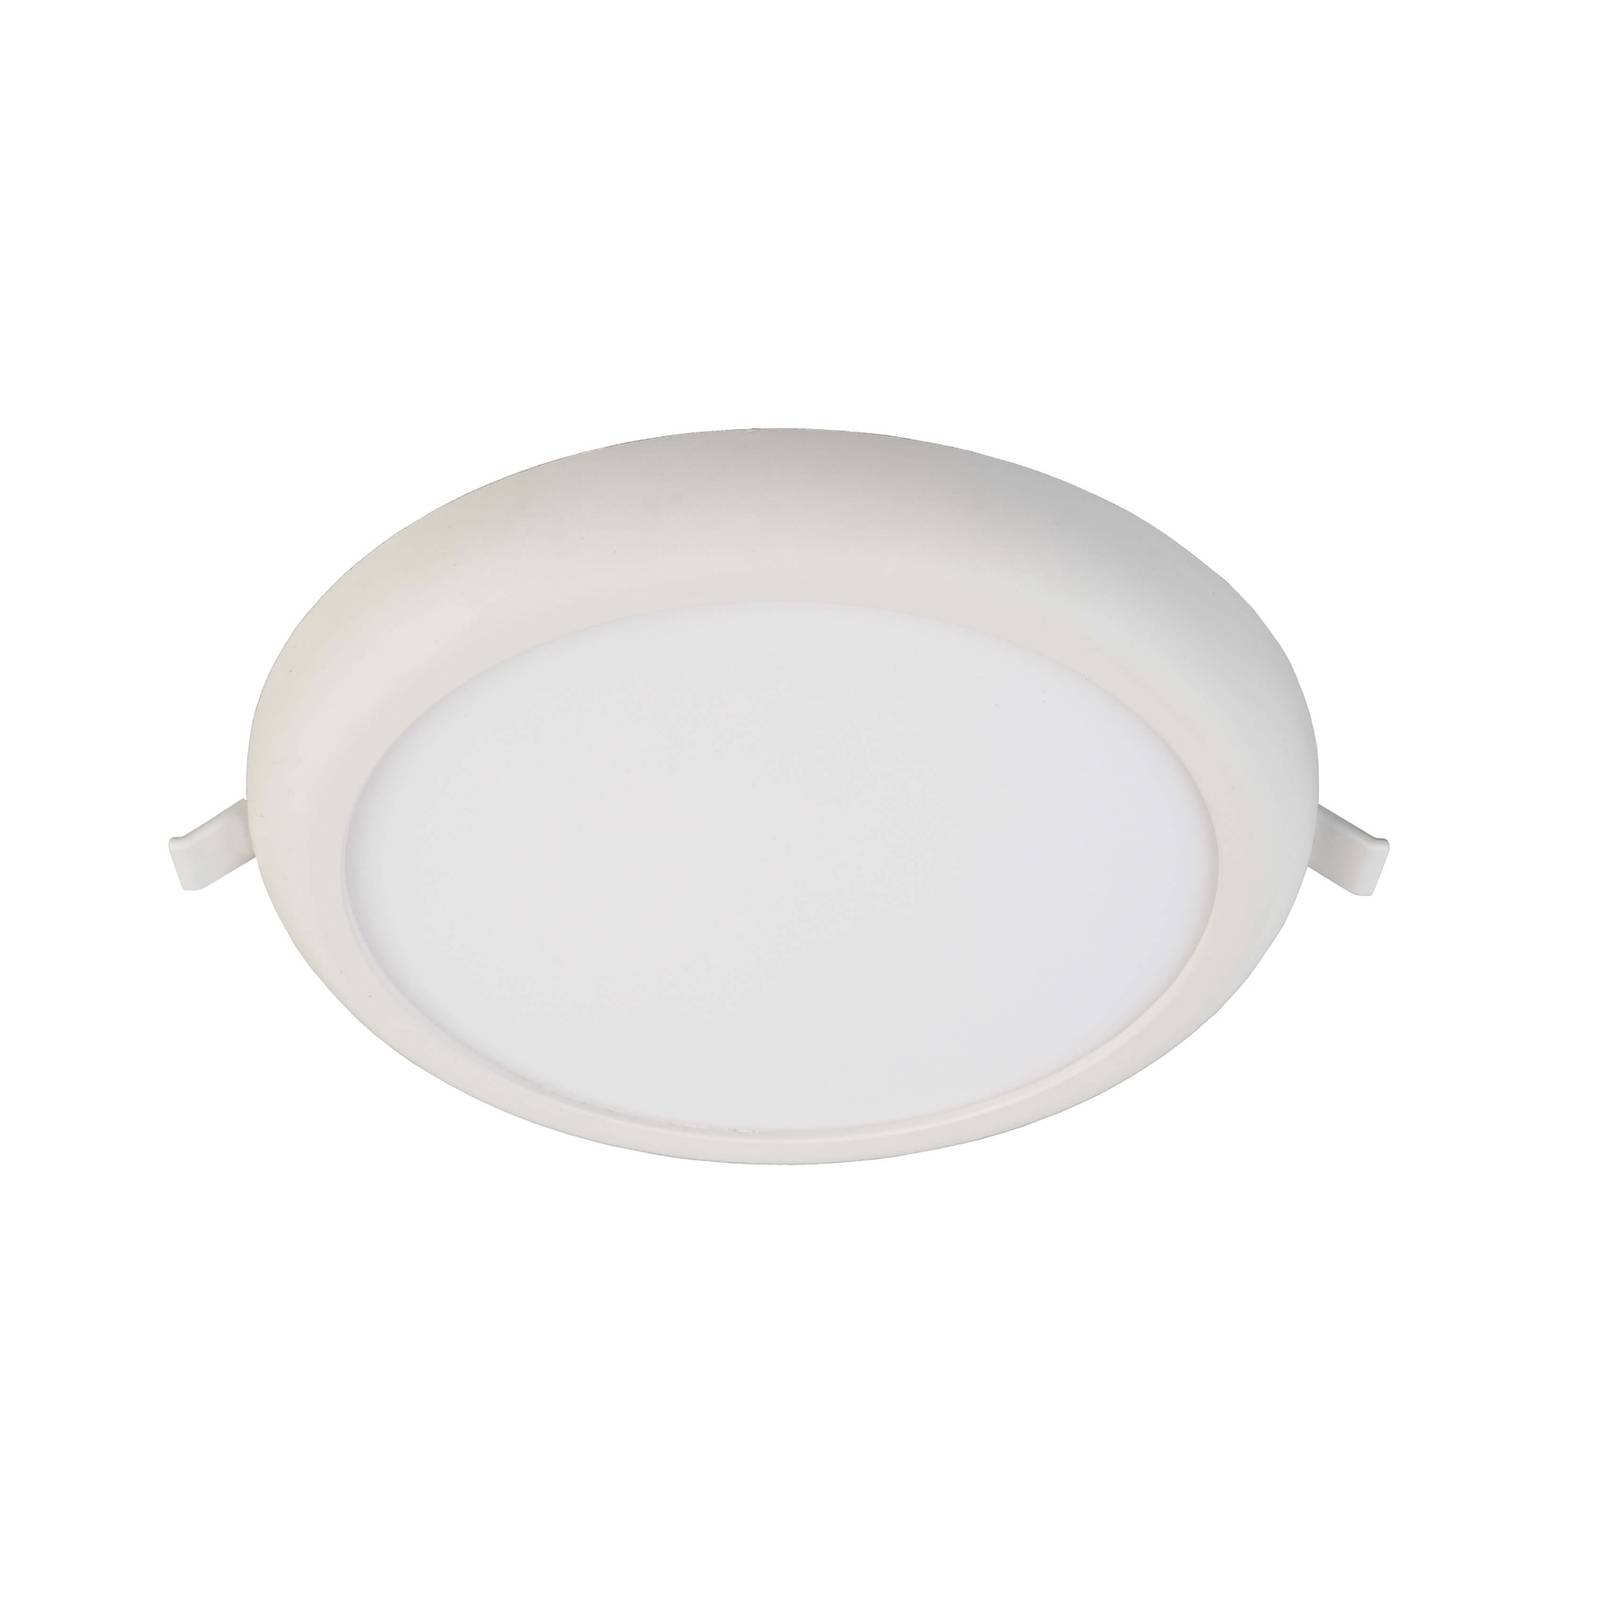 Deko-Light LED-Deckeneinbauleuchte Zaurak, weiß, rund Ø 22 cm